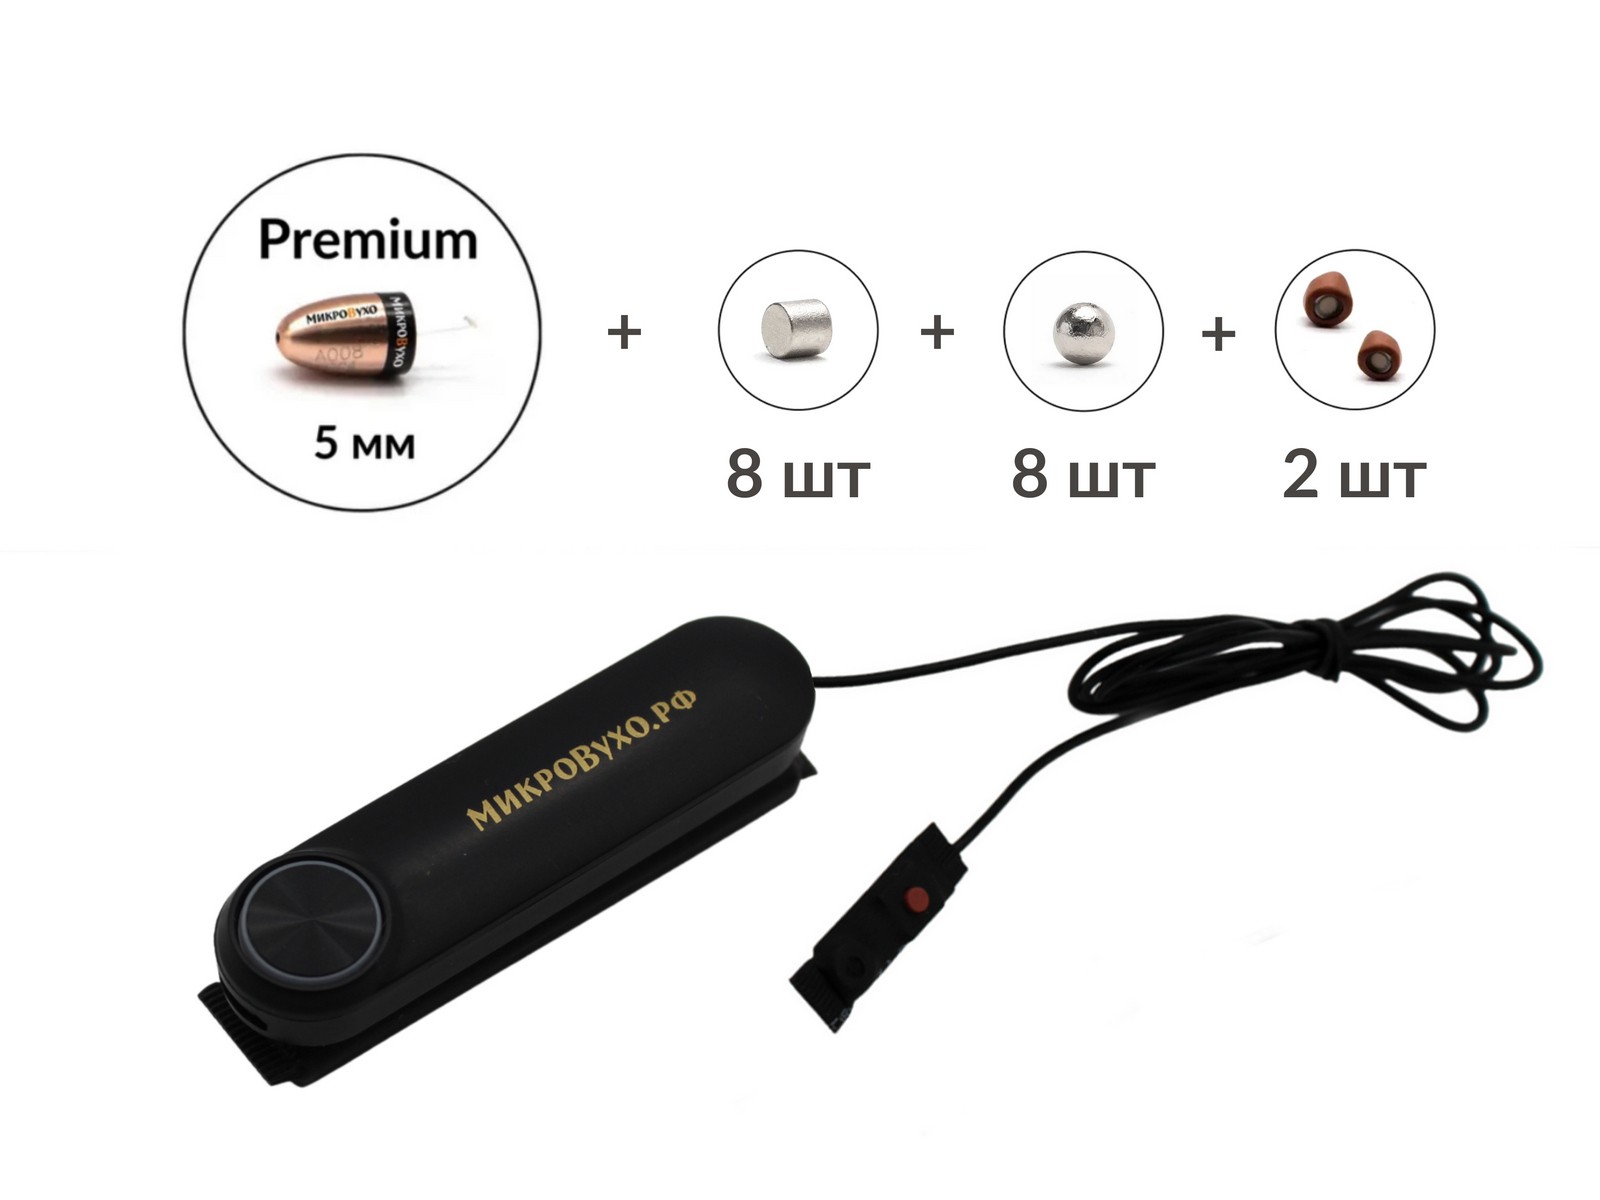 Универсальная гарнитура Bluetooth Box Standard Plus с капсулой К5 4 мм и магнитами 2 мм